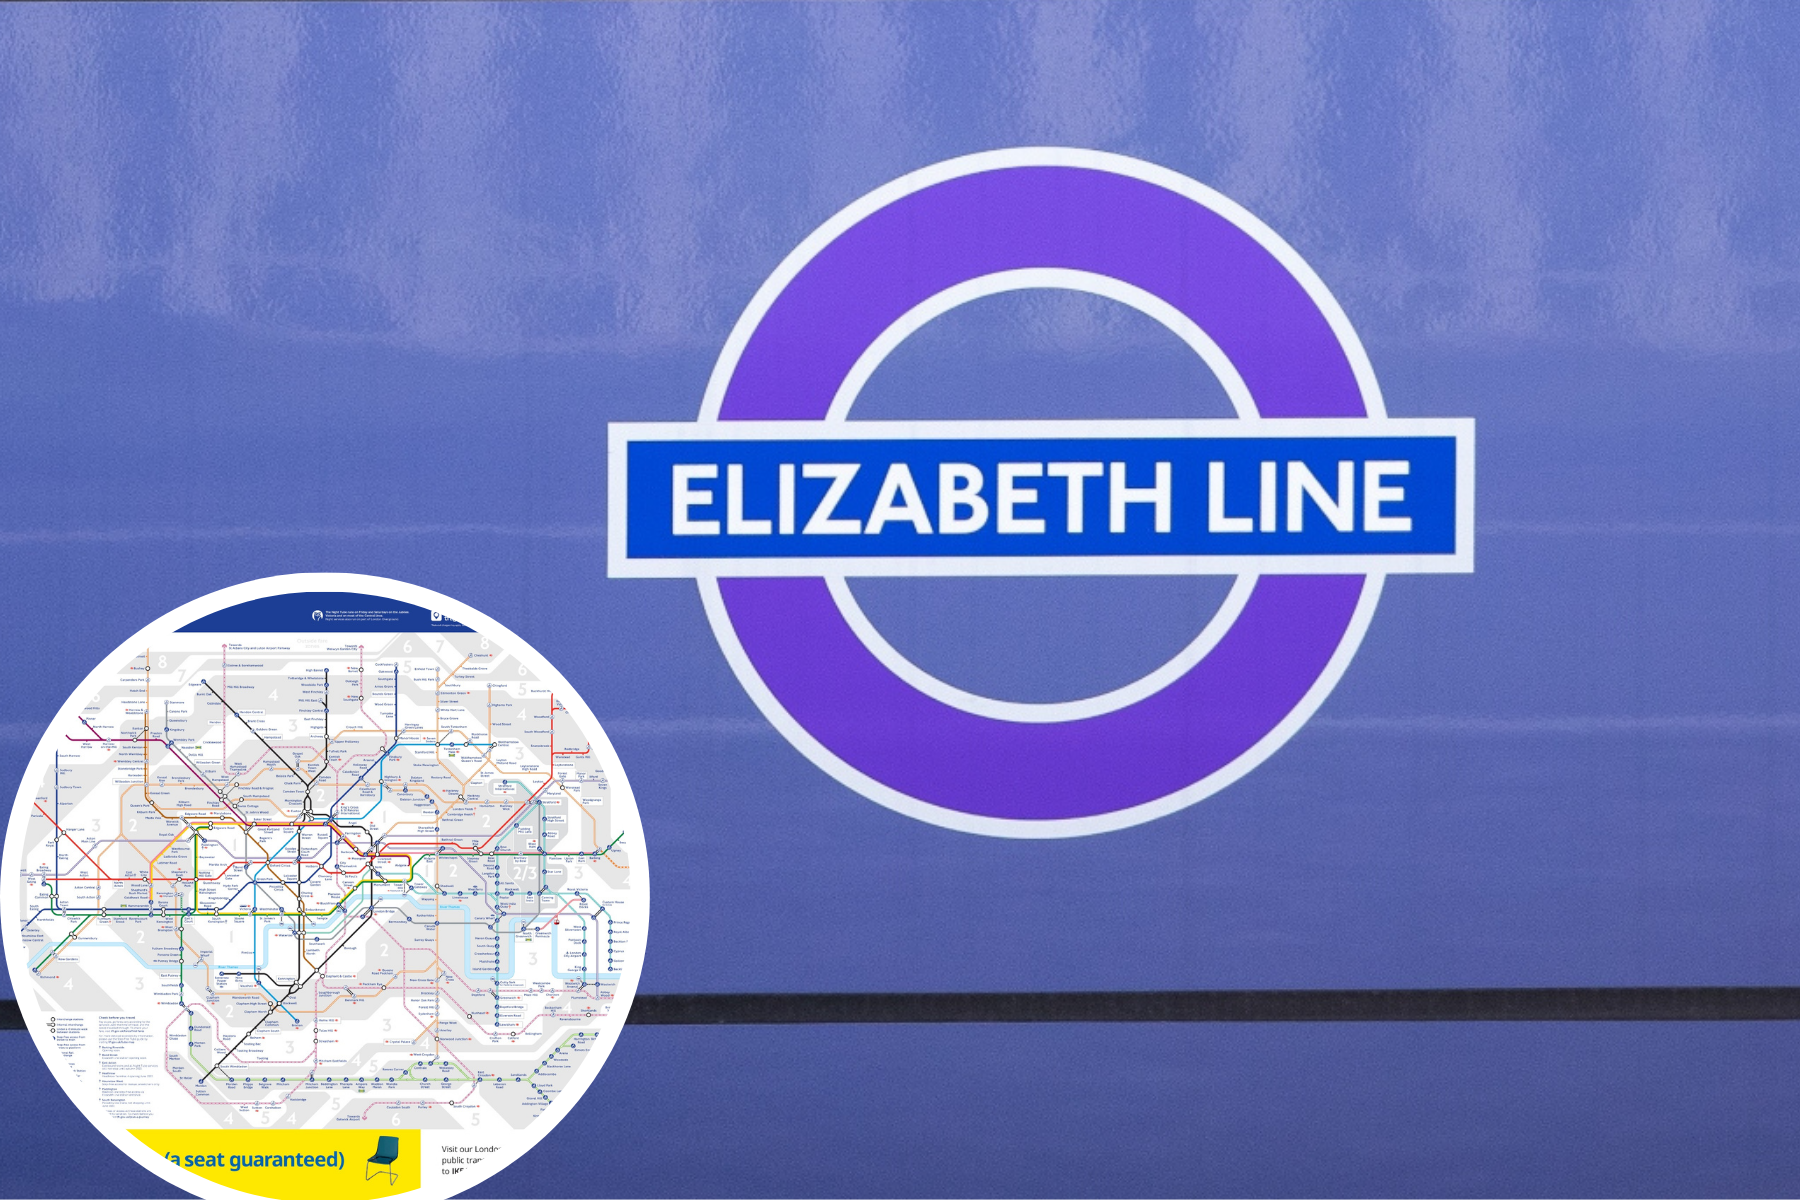 Nouvelle carte du métro avec la ligne Elizabeth publiée